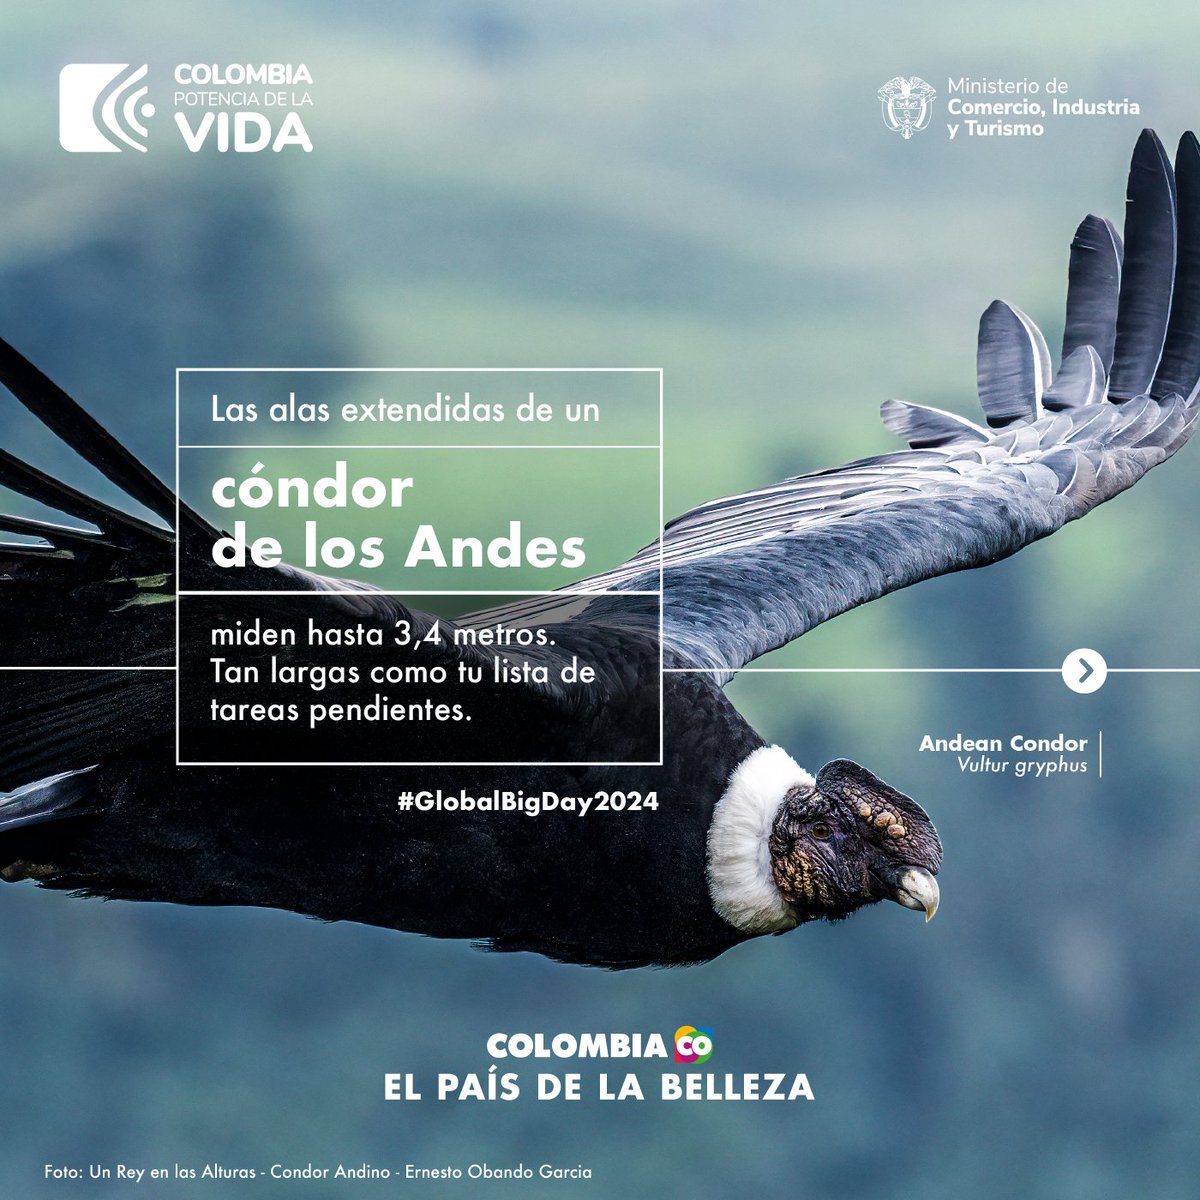 A que no sabías estos datos sobre las aves que surcan los cielos colombianos 🇨🇴. ¿Ya viste hacia arriba? Participa el 11 de mayo en el #GlobalBigDay2024 y demostremos de nuevo por qué Colombia es #ElPaísDeLaBelleza, número 1 en especies de aves. >> ebird.org/globalbigday